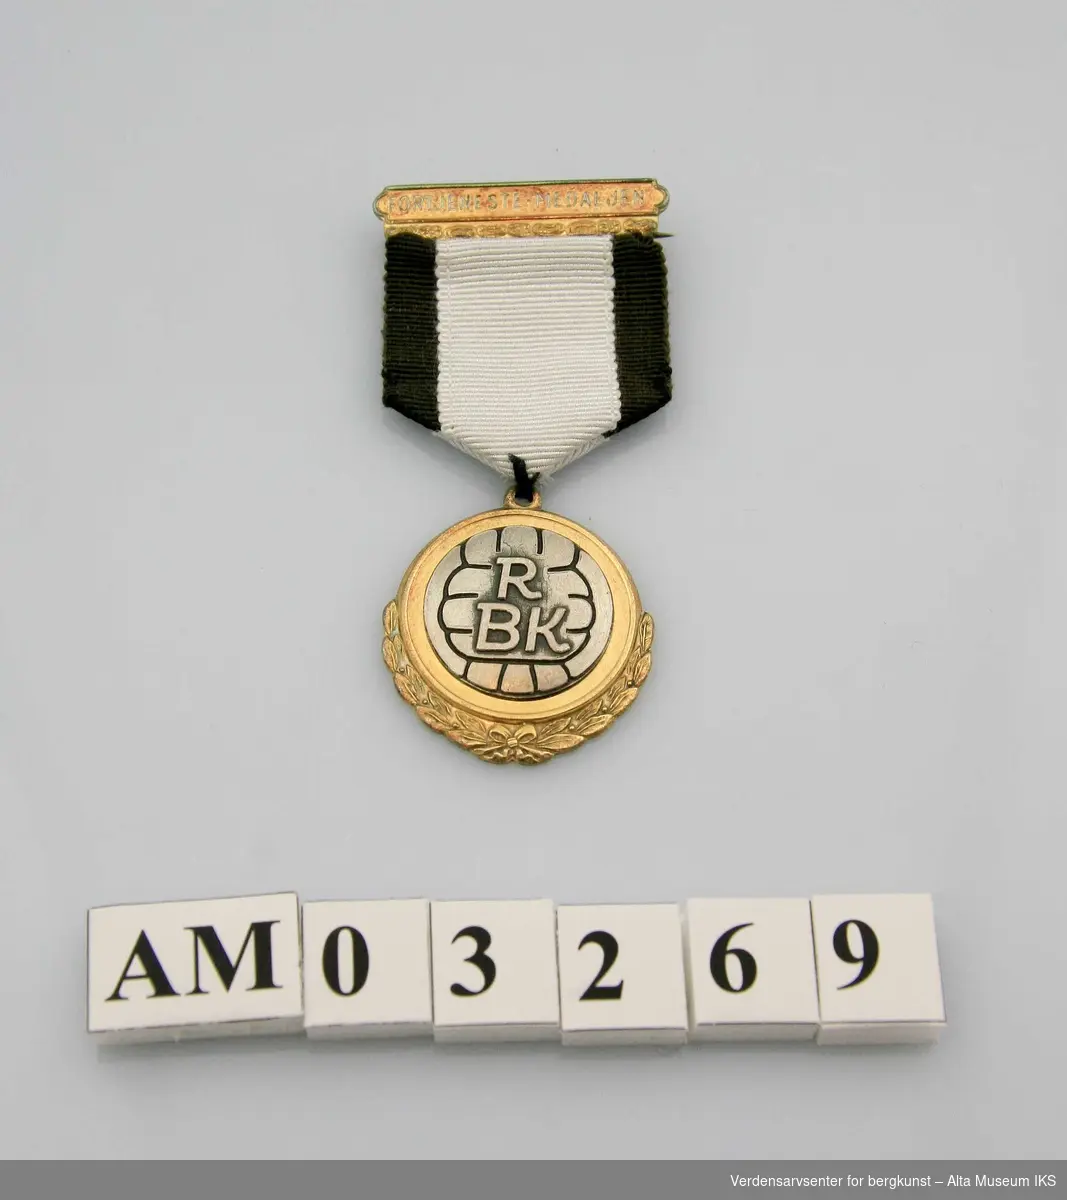 Form: Medalje m/løv i underkant, bånd fra ornamentert agraff
Motiv: fotball med RB  innenfor løvkvister m/sløyfe. Svart og hvitt bånd. 